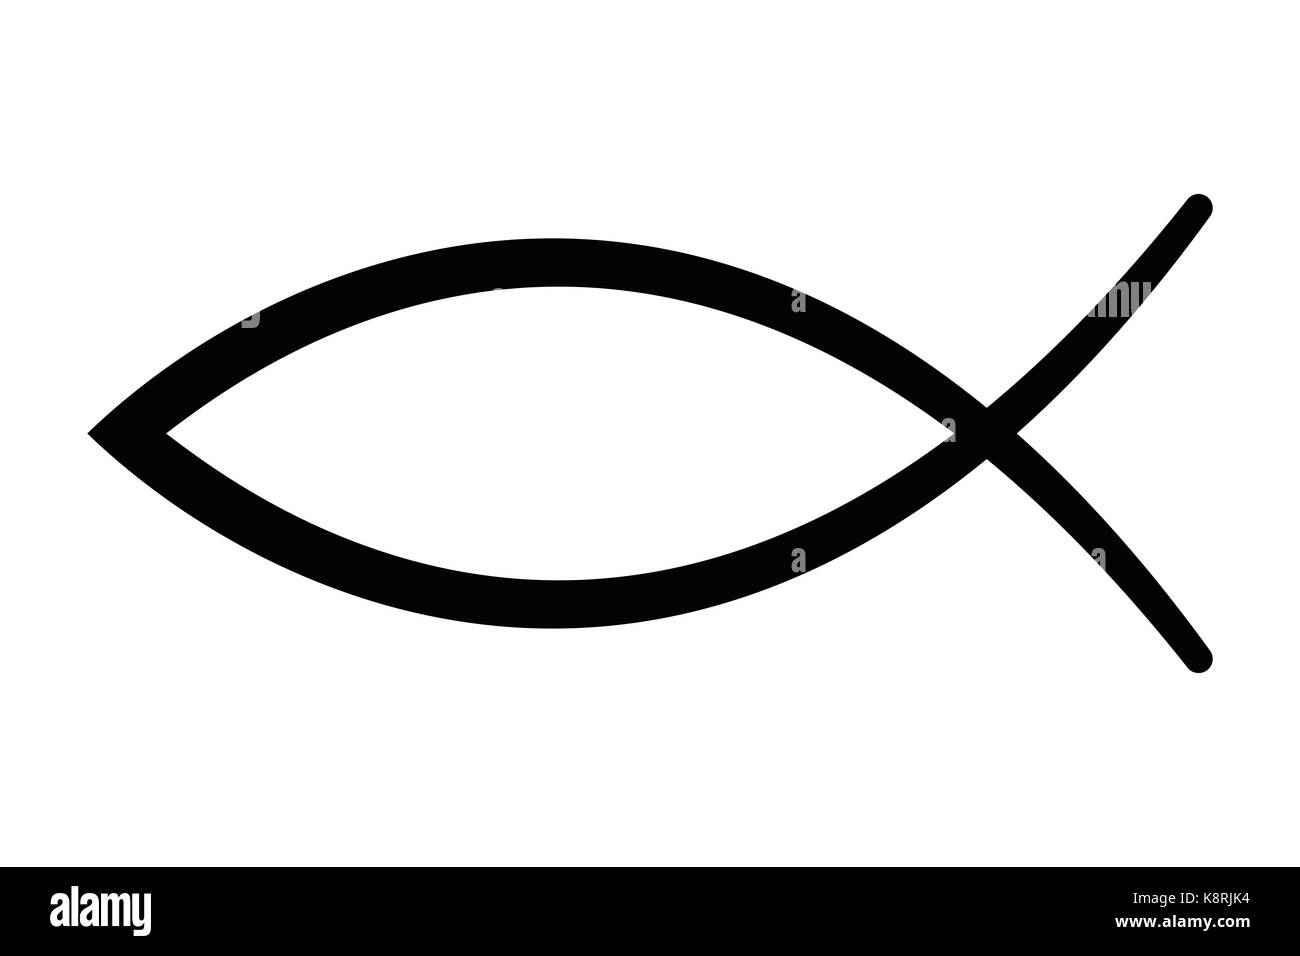 Segno dei pesci, un simbolo di arte cristiana, noto anche come Gesù pesce. simbolo costituito da due archi intersecantisi. Chiamato anche ichthys ichthus o. Foto Stock